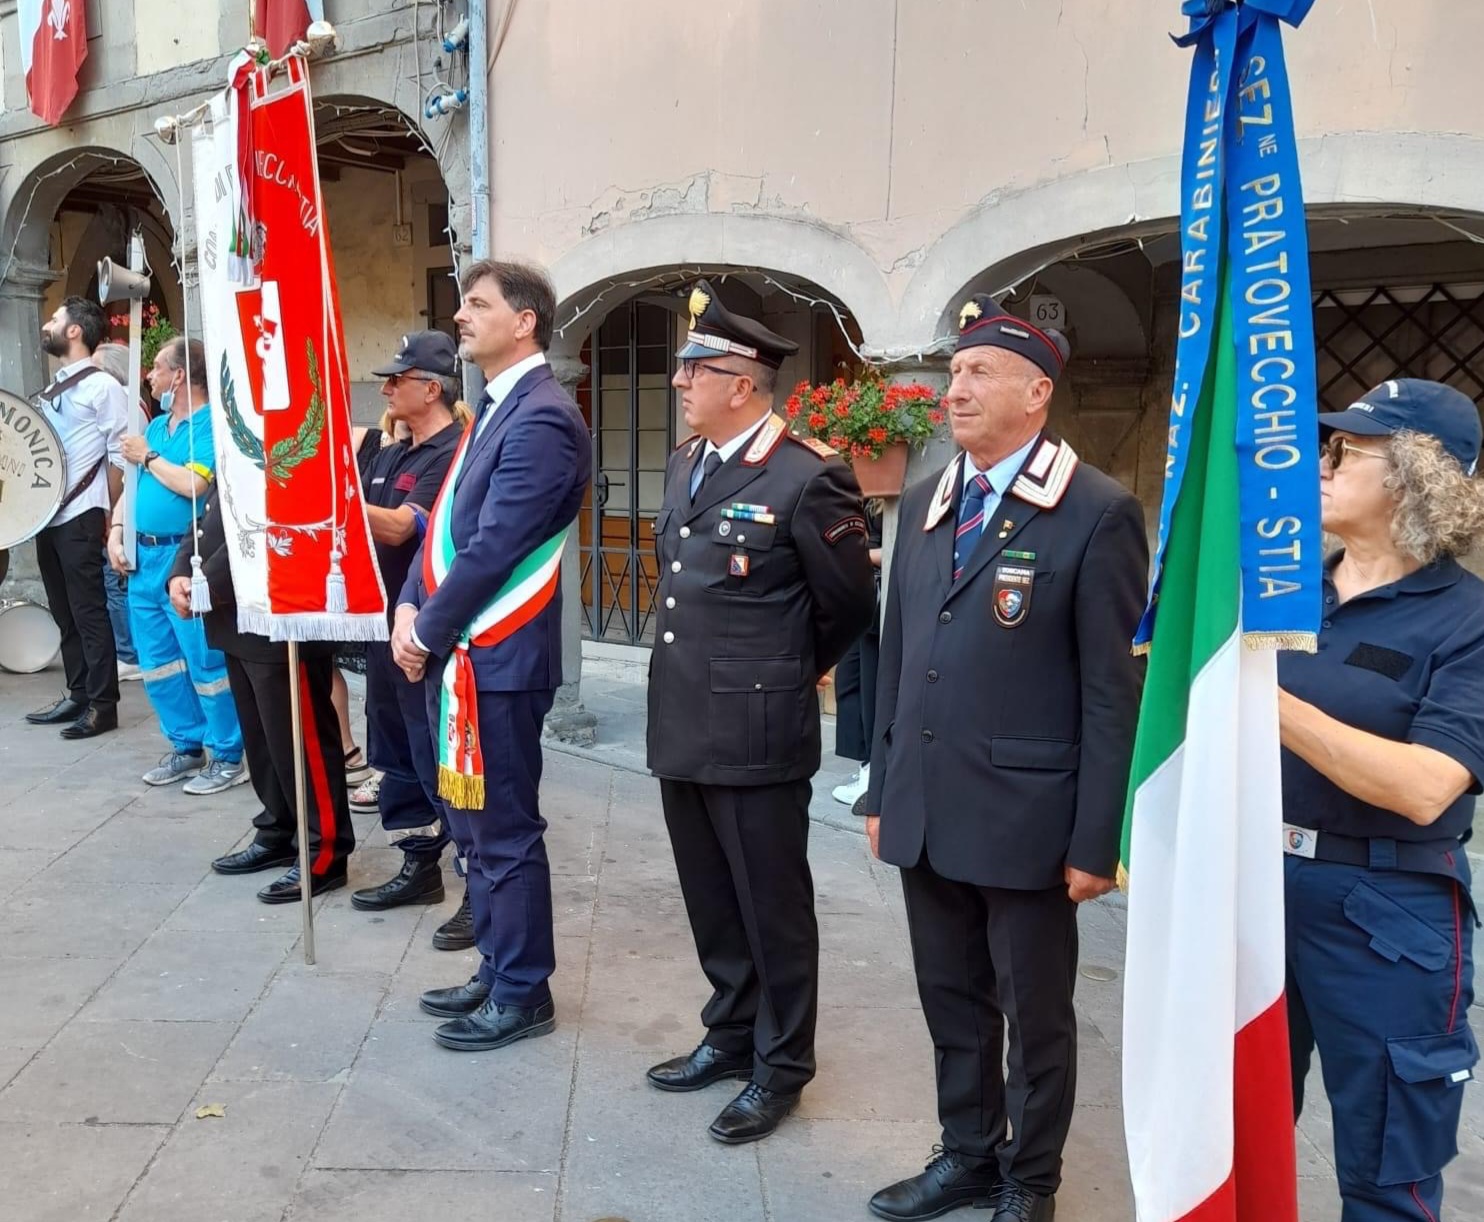 Associazione Nazionale Carabinieri, una ricchezza per il territorio di Pratovecchio Stia